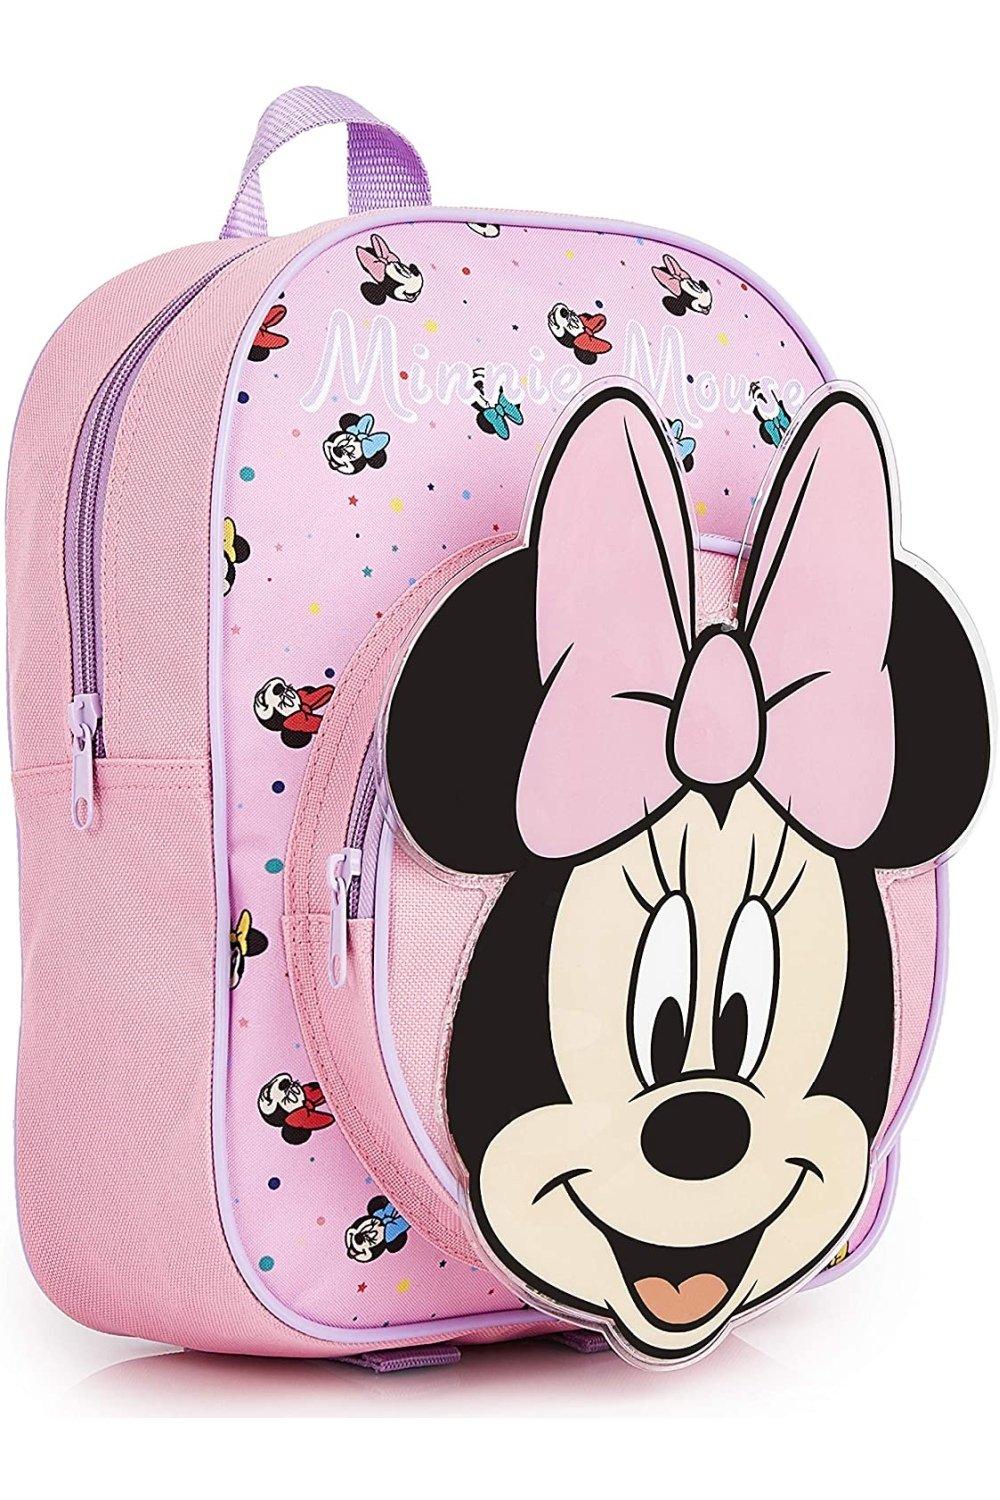 Школьная сумка Минни Маус Disney, розовый disney маникюрный набор для девочек минни маус